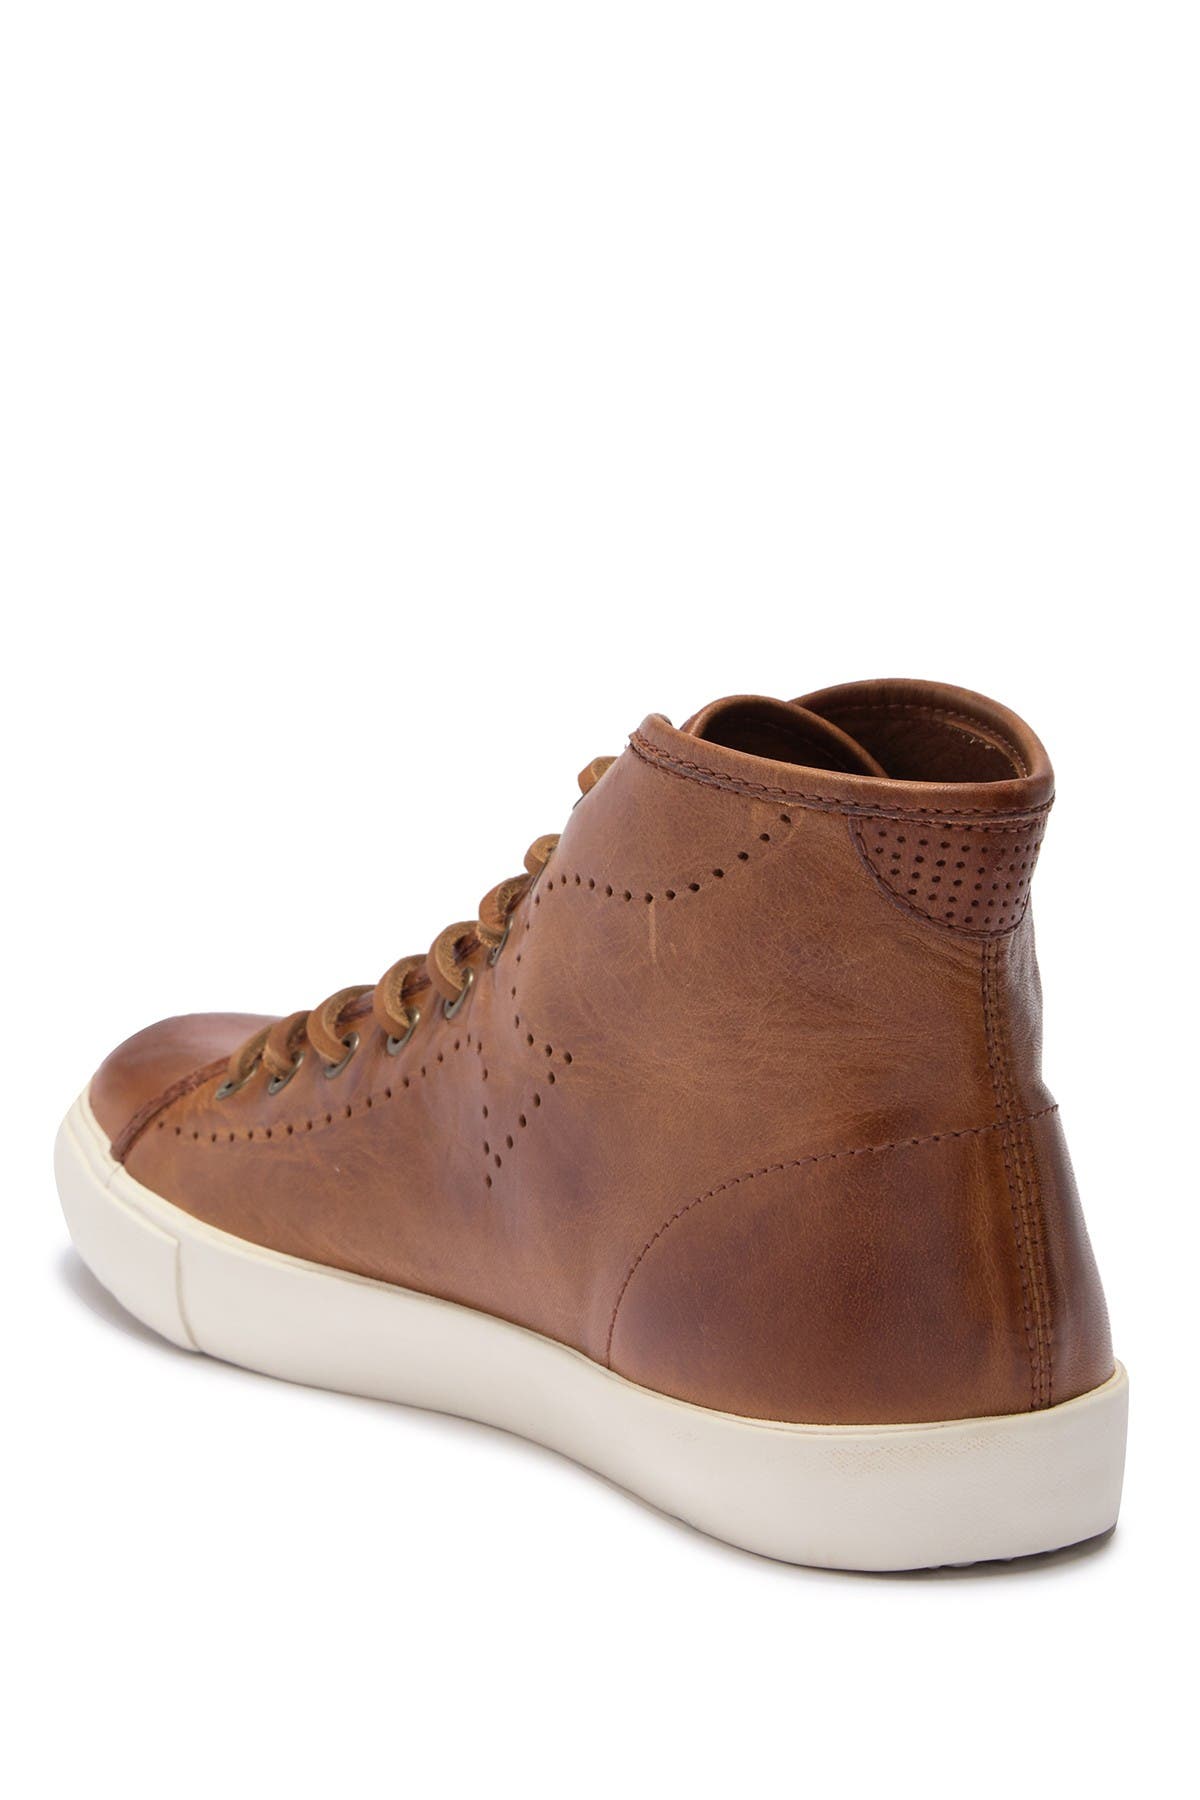 Frye | Brett High Leather Sneaker 